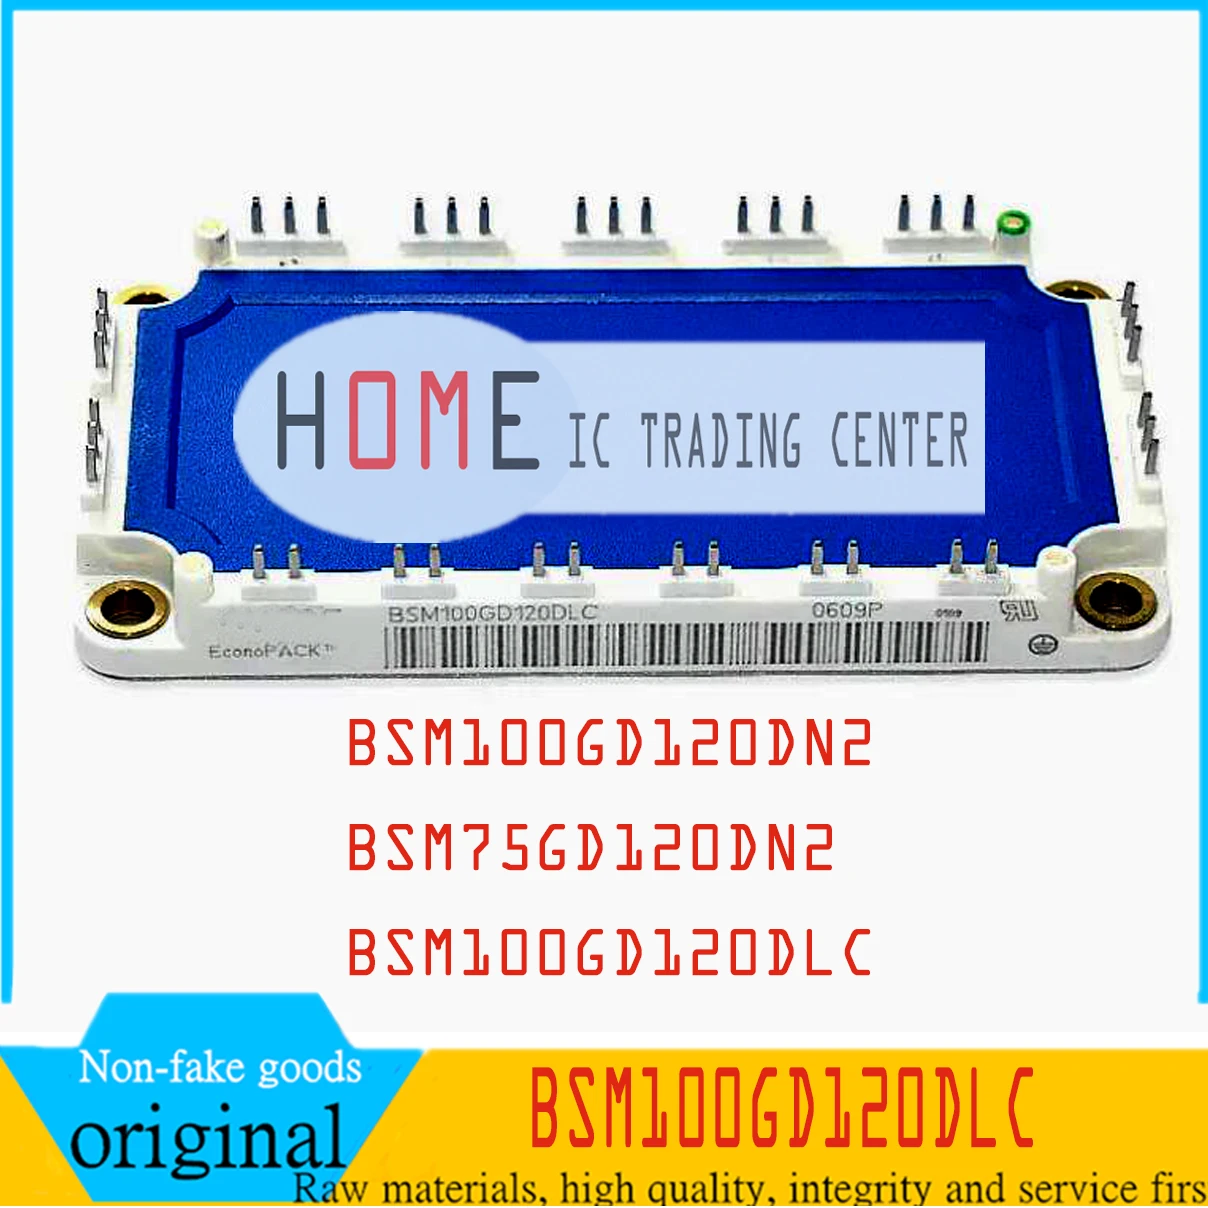 

New original BSM100GD120DN2 BSM75GD120DN2 BSM100GD120DLC IGBT power module